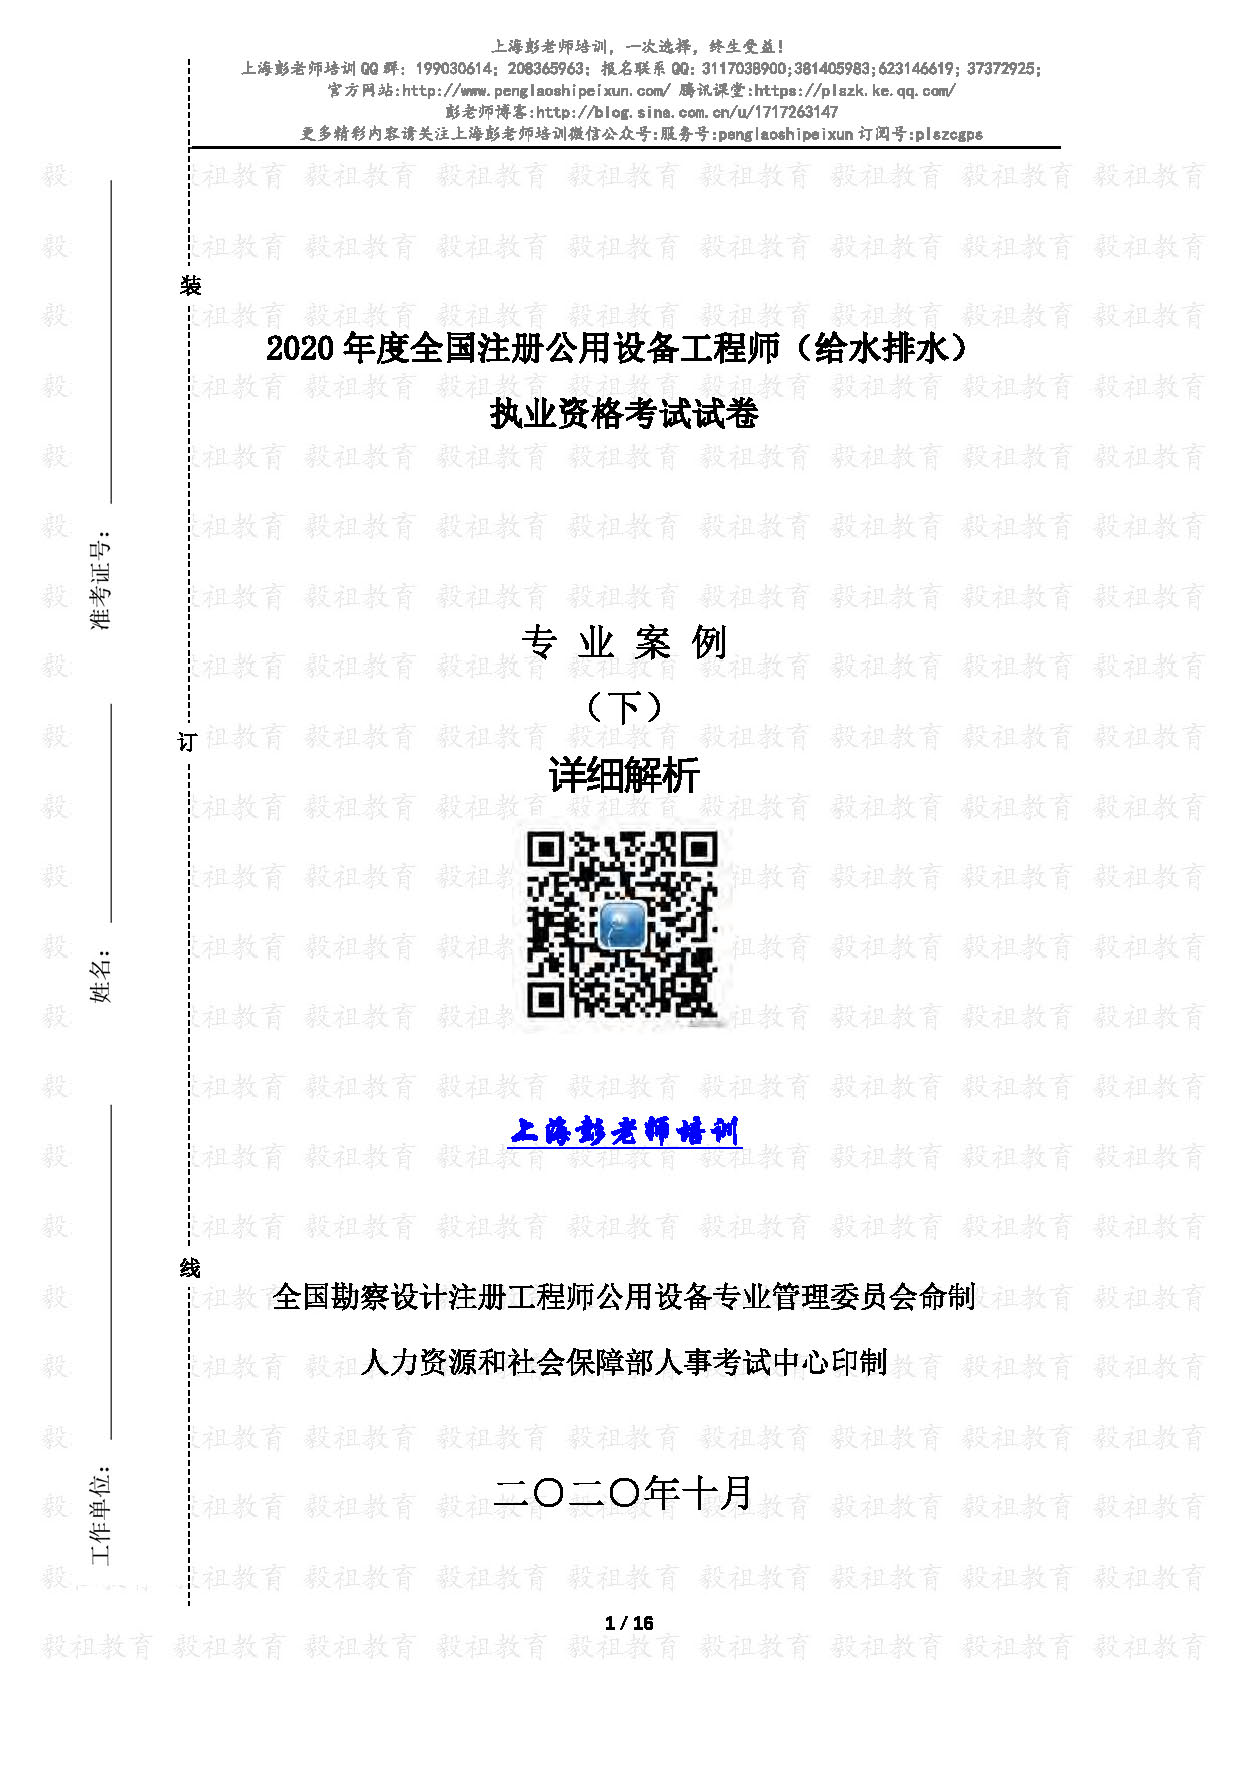 2020注册给排水专业案例真题(下午)详细解析-上海彭老师培训_页面_01.jpg